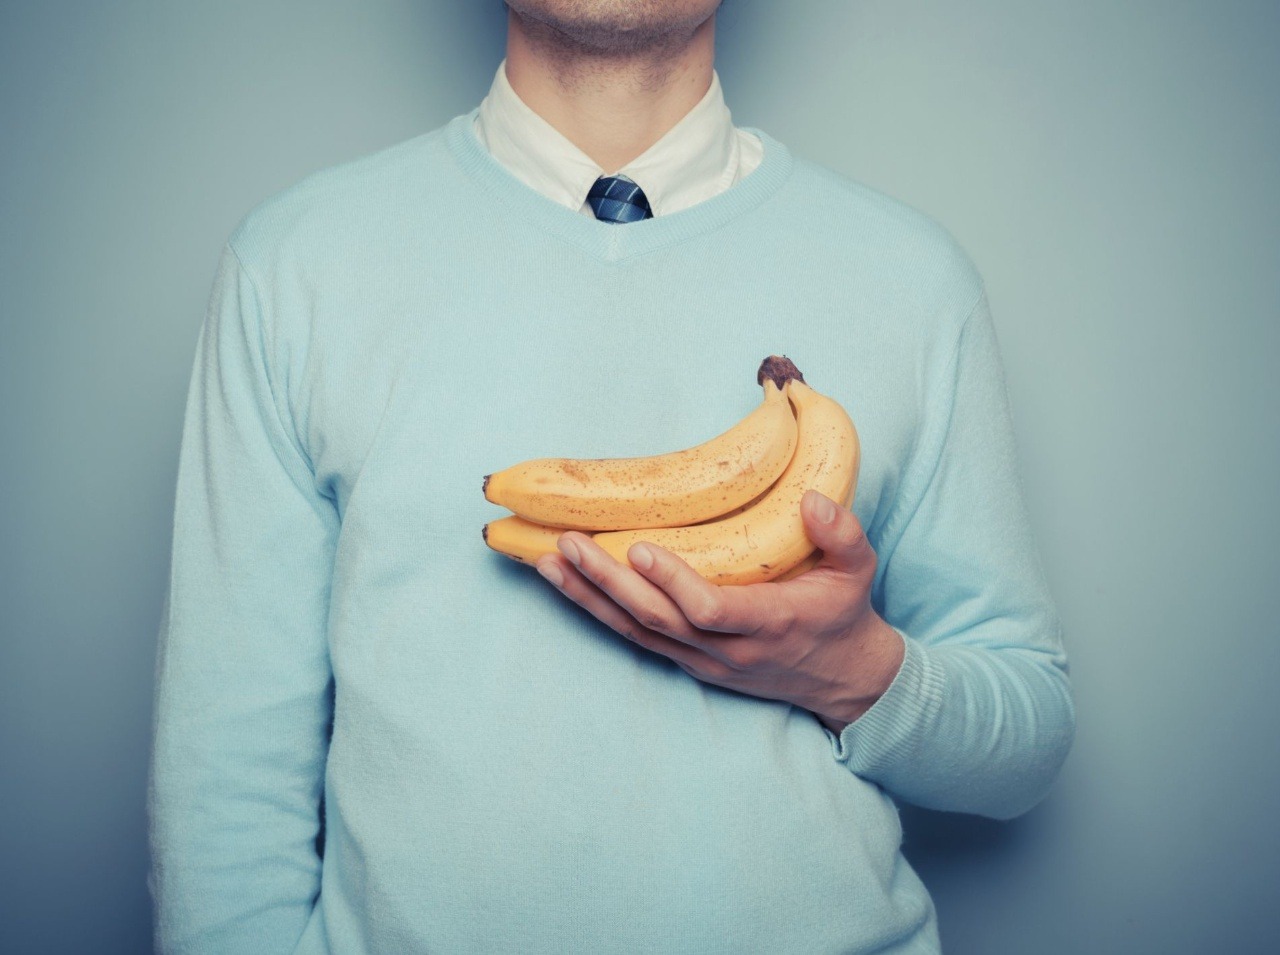 Zrelé banány by sme vraj nemali konzumovať.